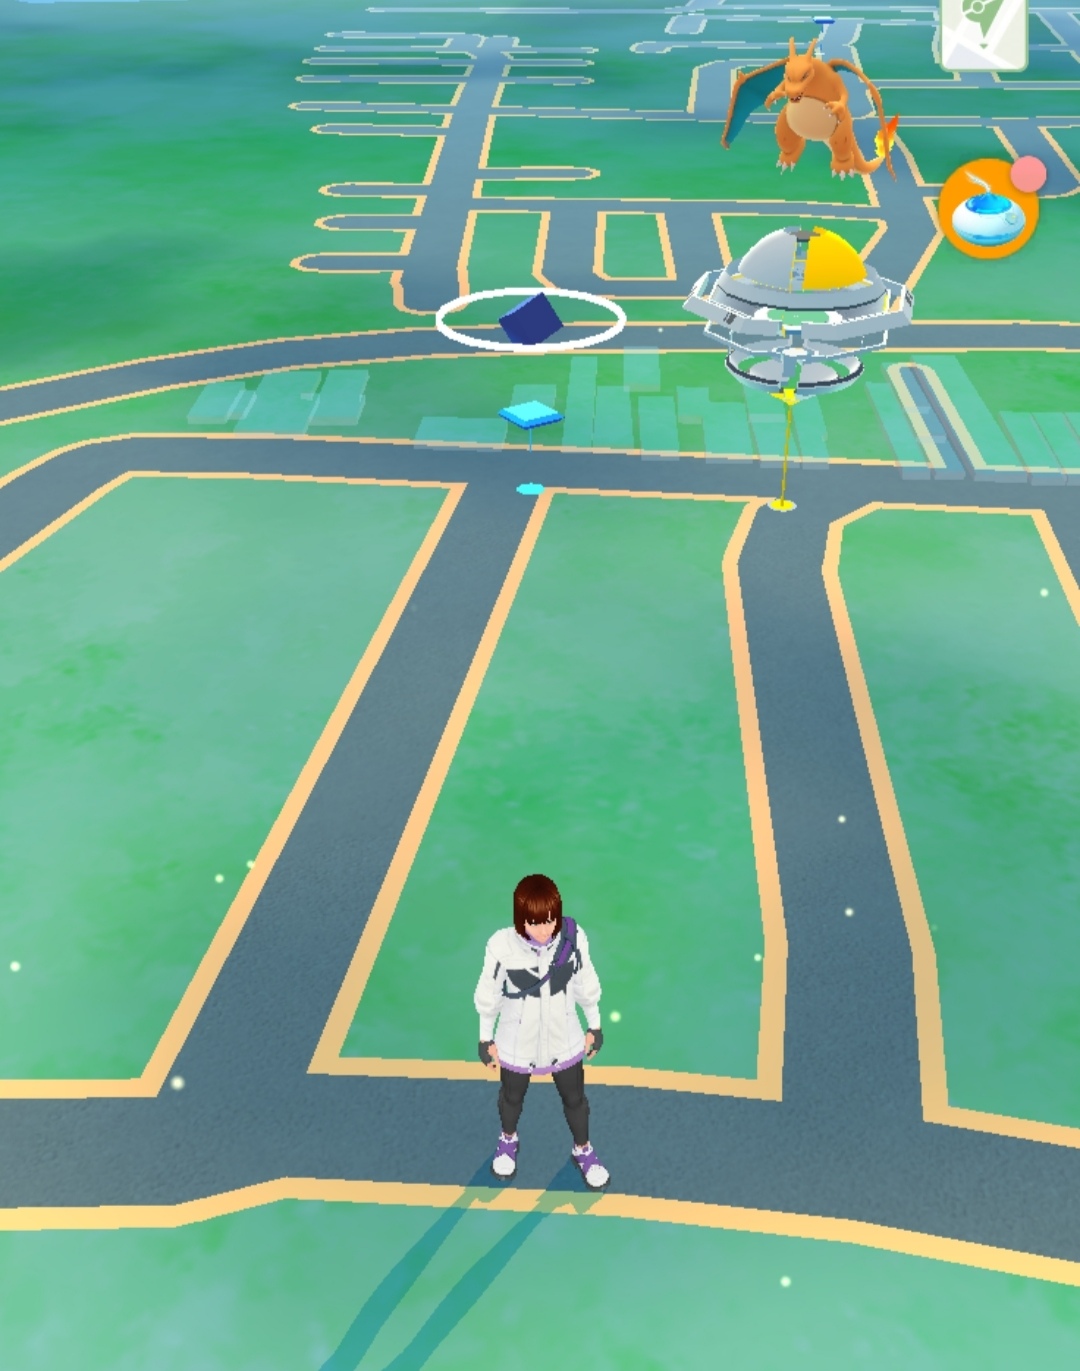 Pokemon Go stadium sights